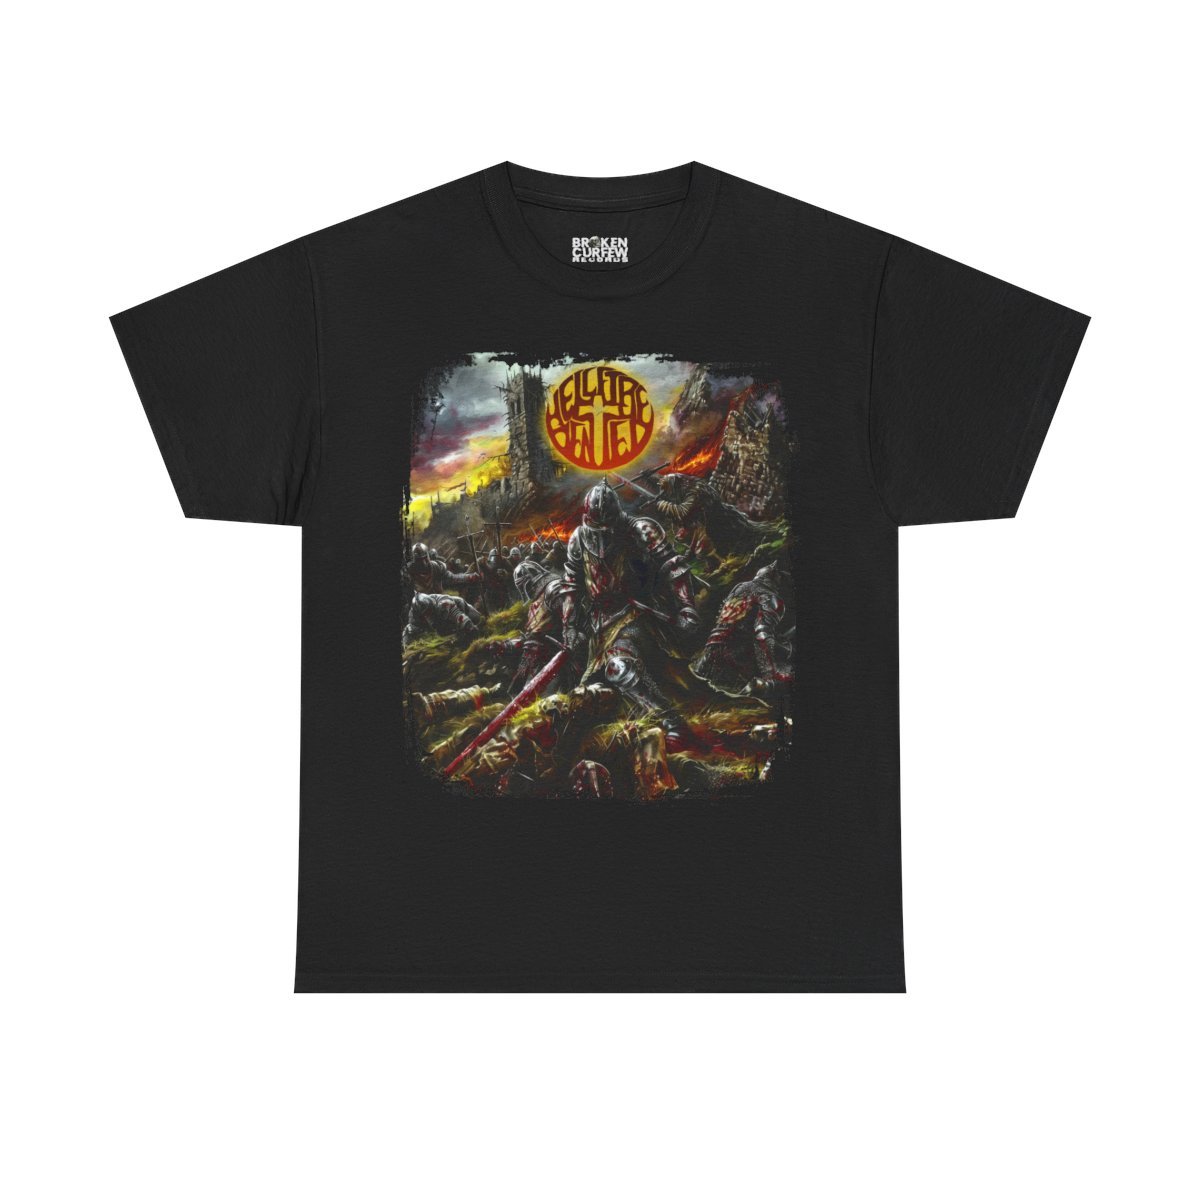 Hellfire Denied – Crusades (Broken Curfew) Short Sleeve T-shirt